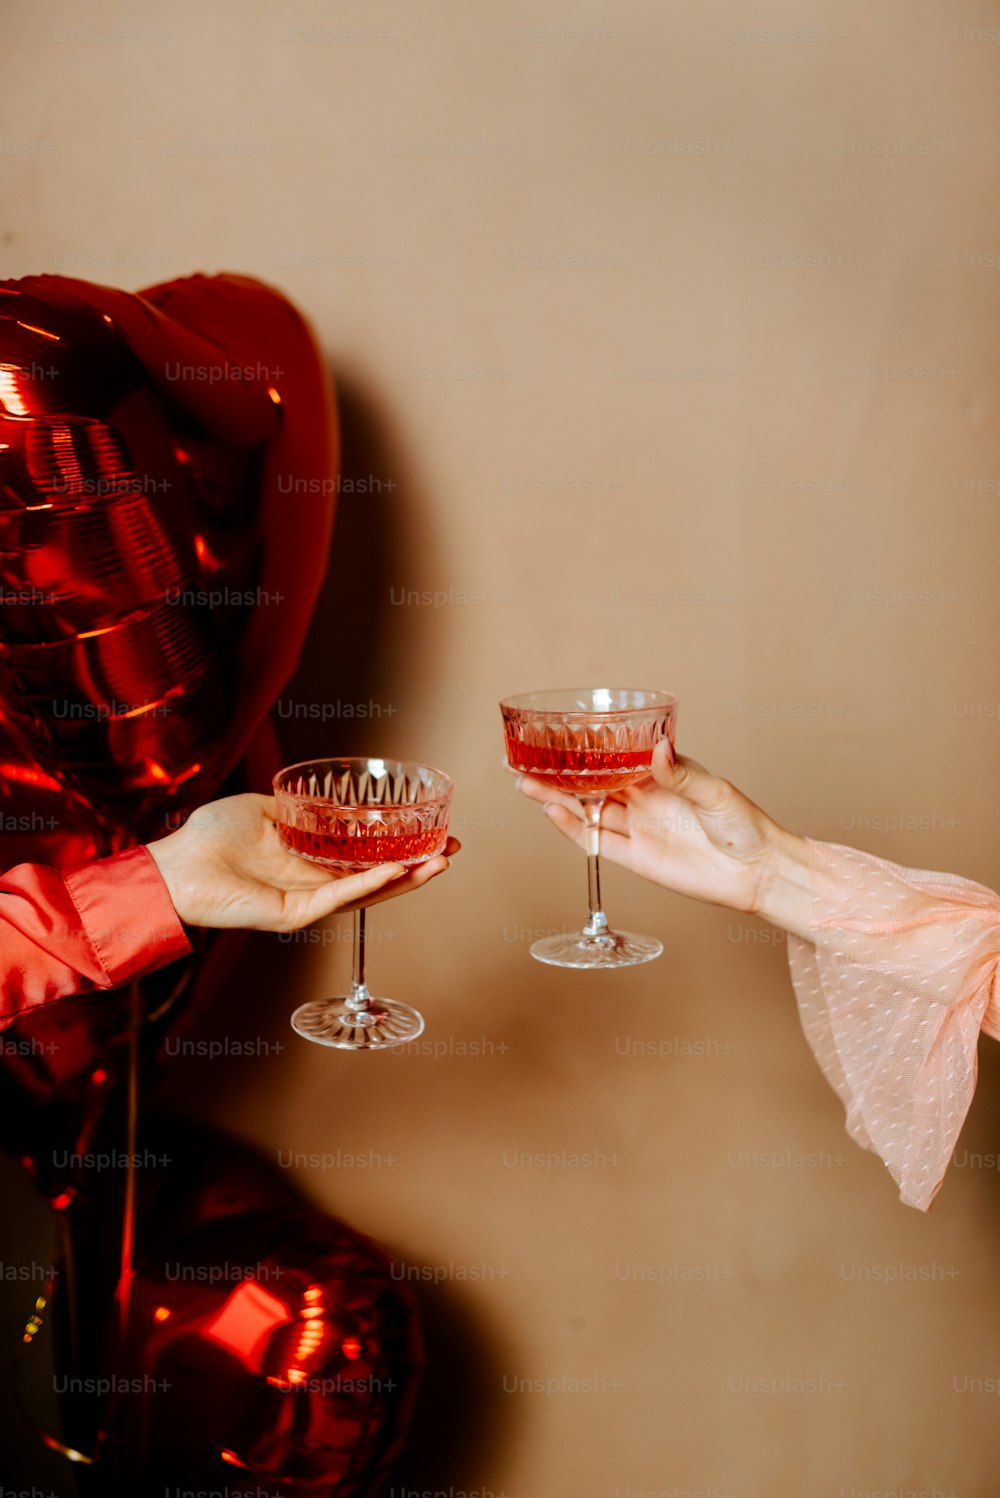 eine Person, die ein Weinglas vor einem Ballon hält